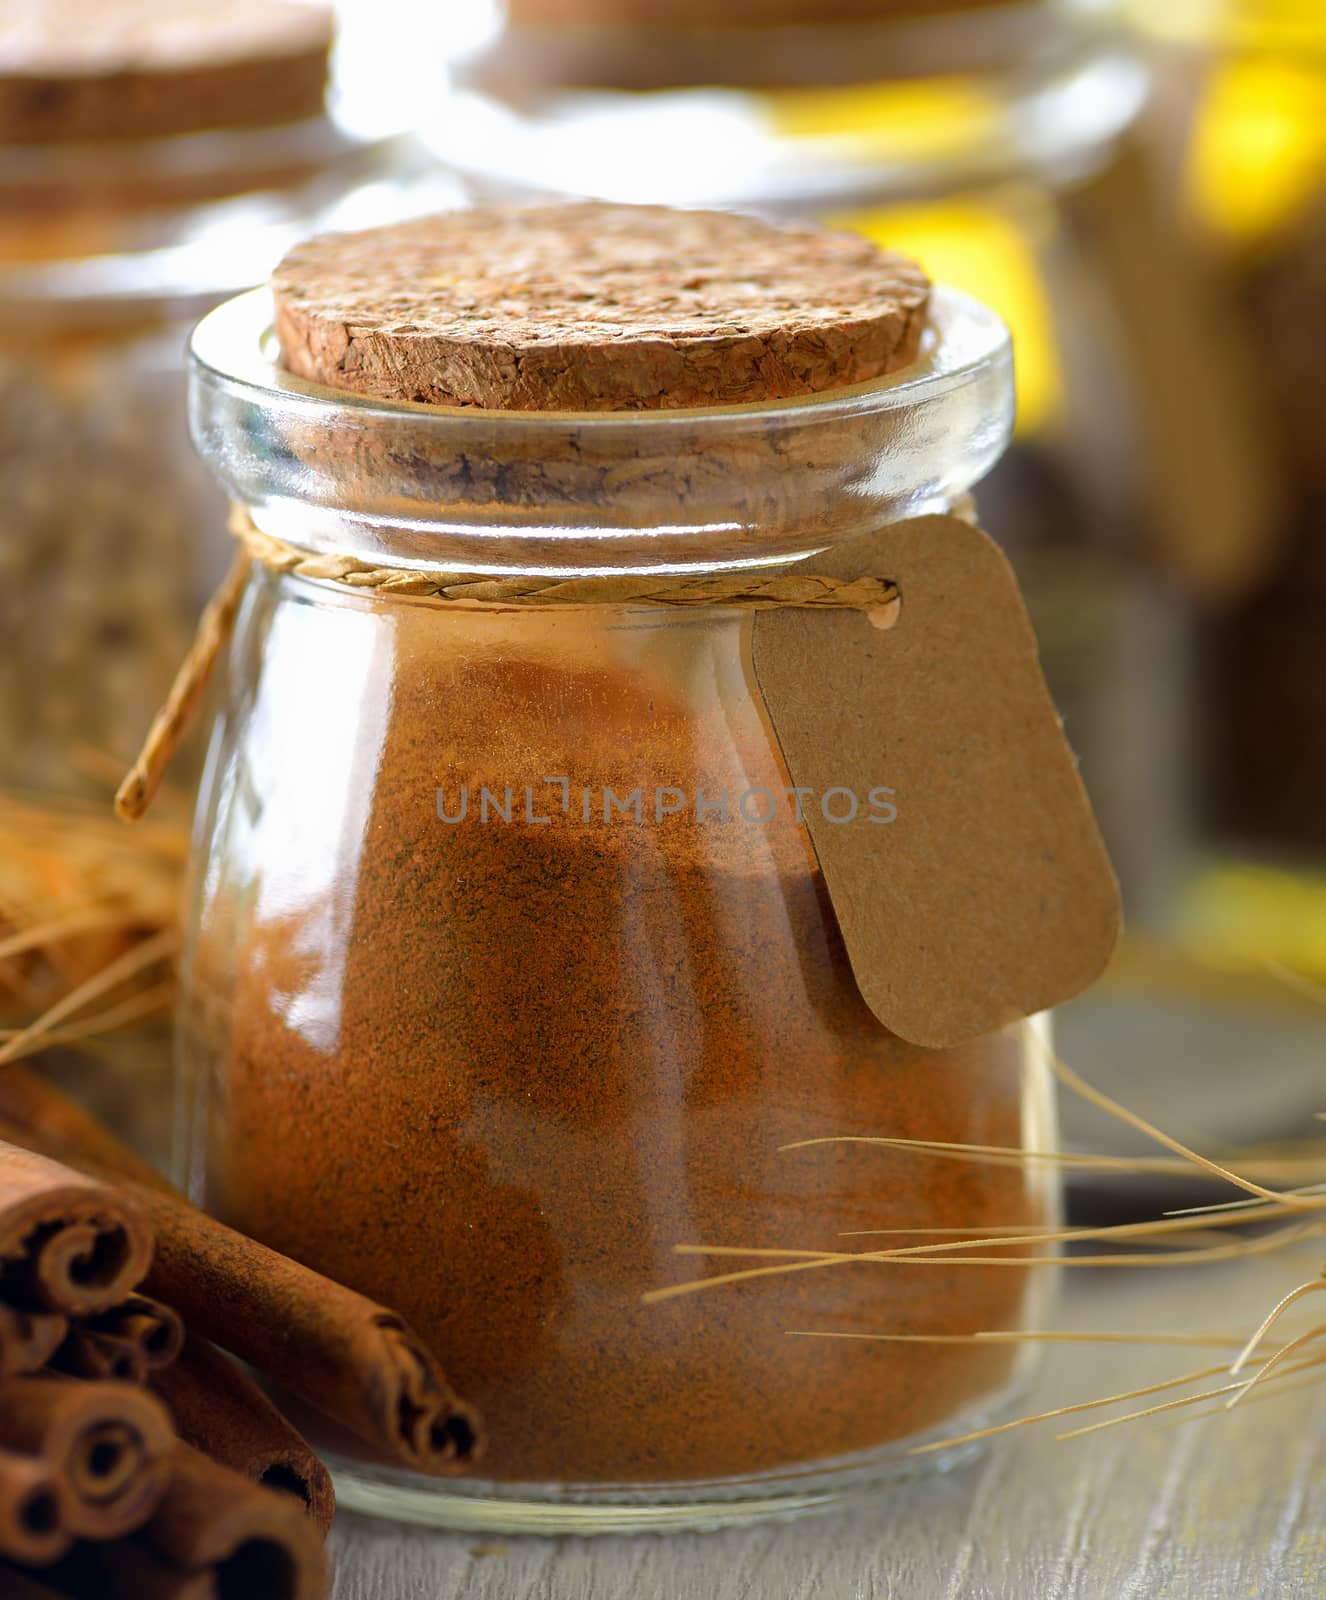 Cinnamon powder in a bottle by sommai